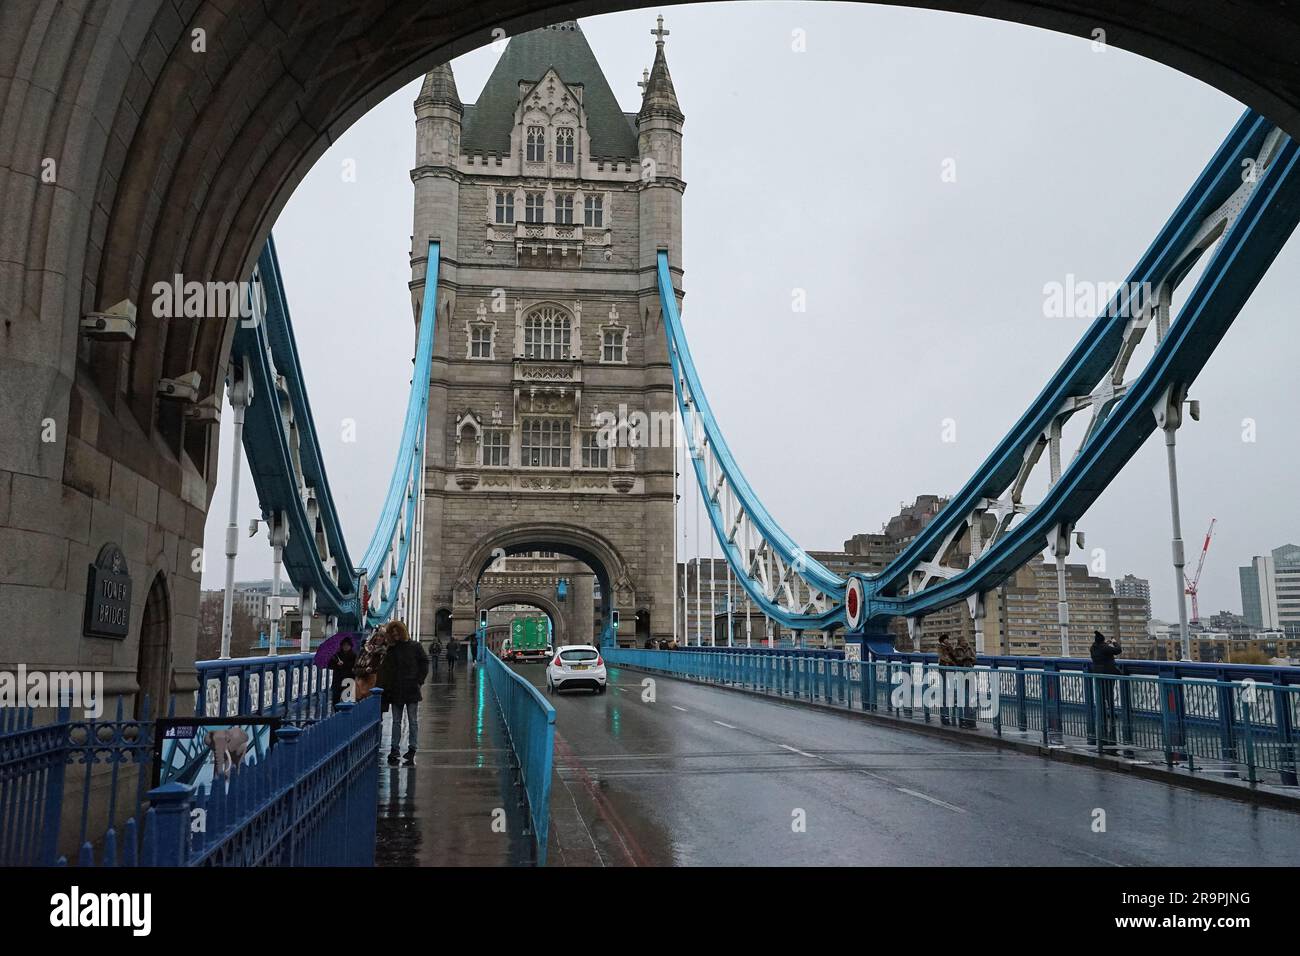 L'architecture extérieure européenne et le design de la « Tower Bridge » traversent la Tamise, un symbole emblématique de Londres, au Royaume-Uni Banque D'Images